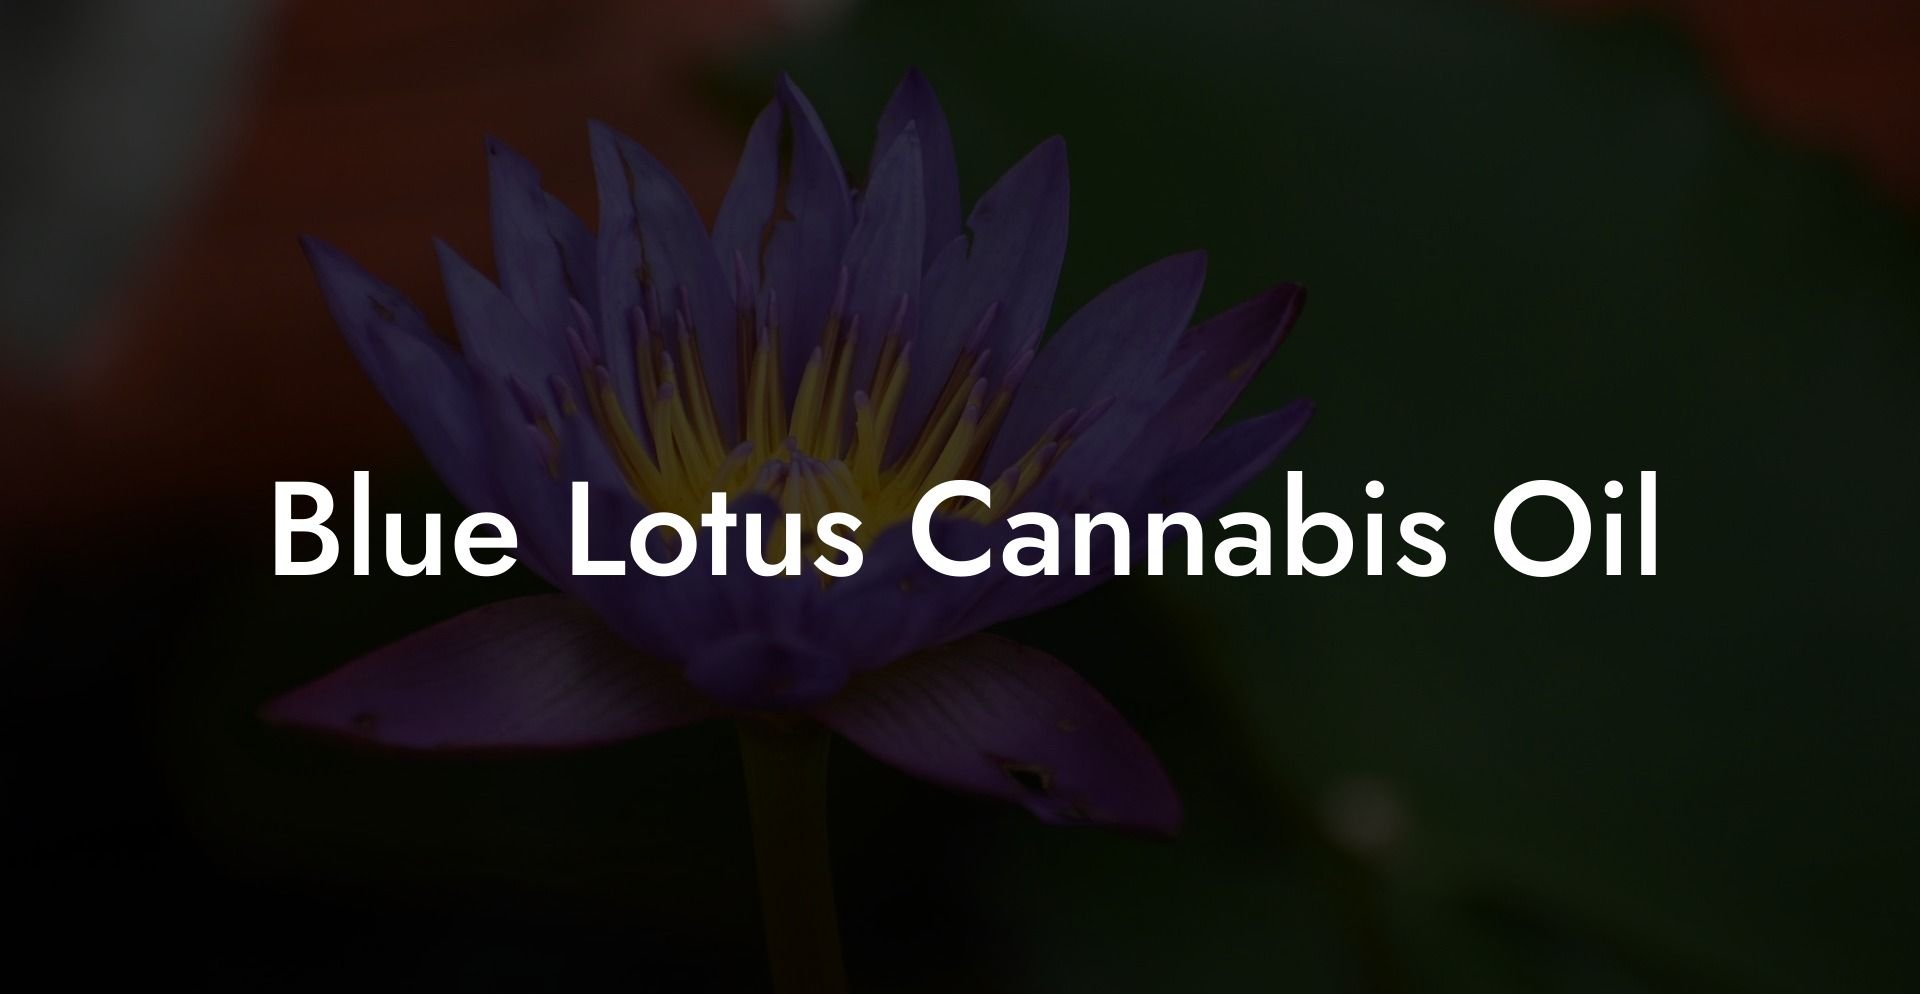 Blue Lotus Cannabis Oil